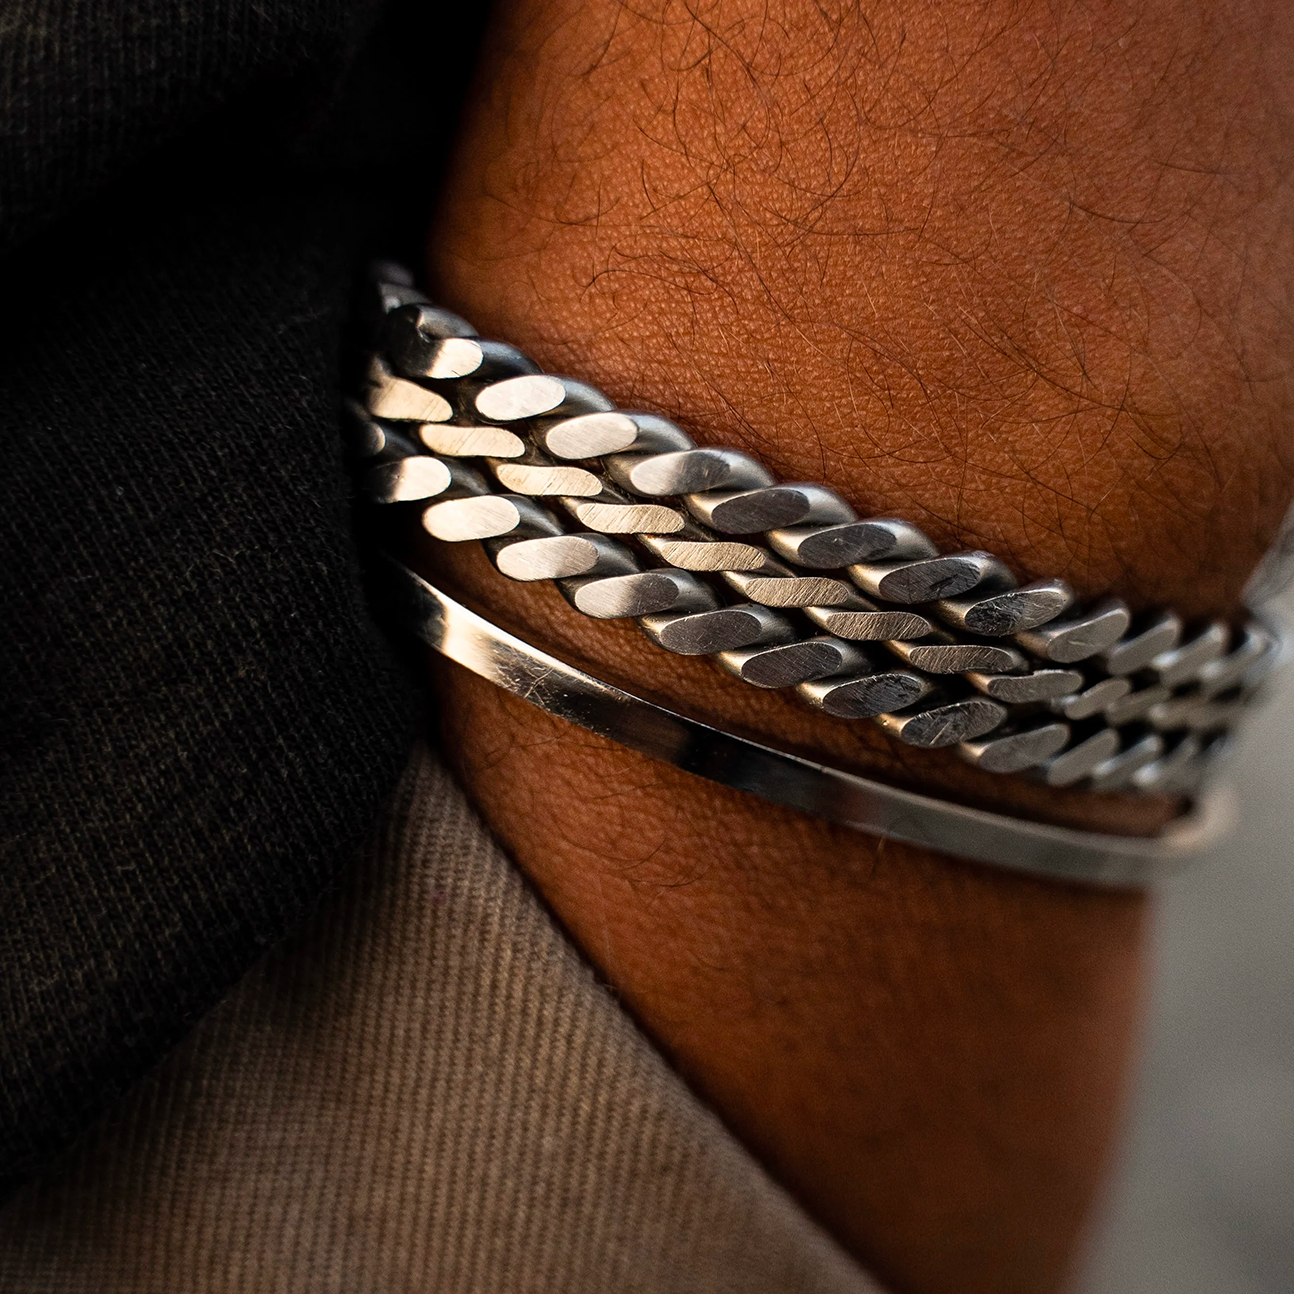 Bracelet magnétique bicolore en acier inoxydable - Bijoux Homme